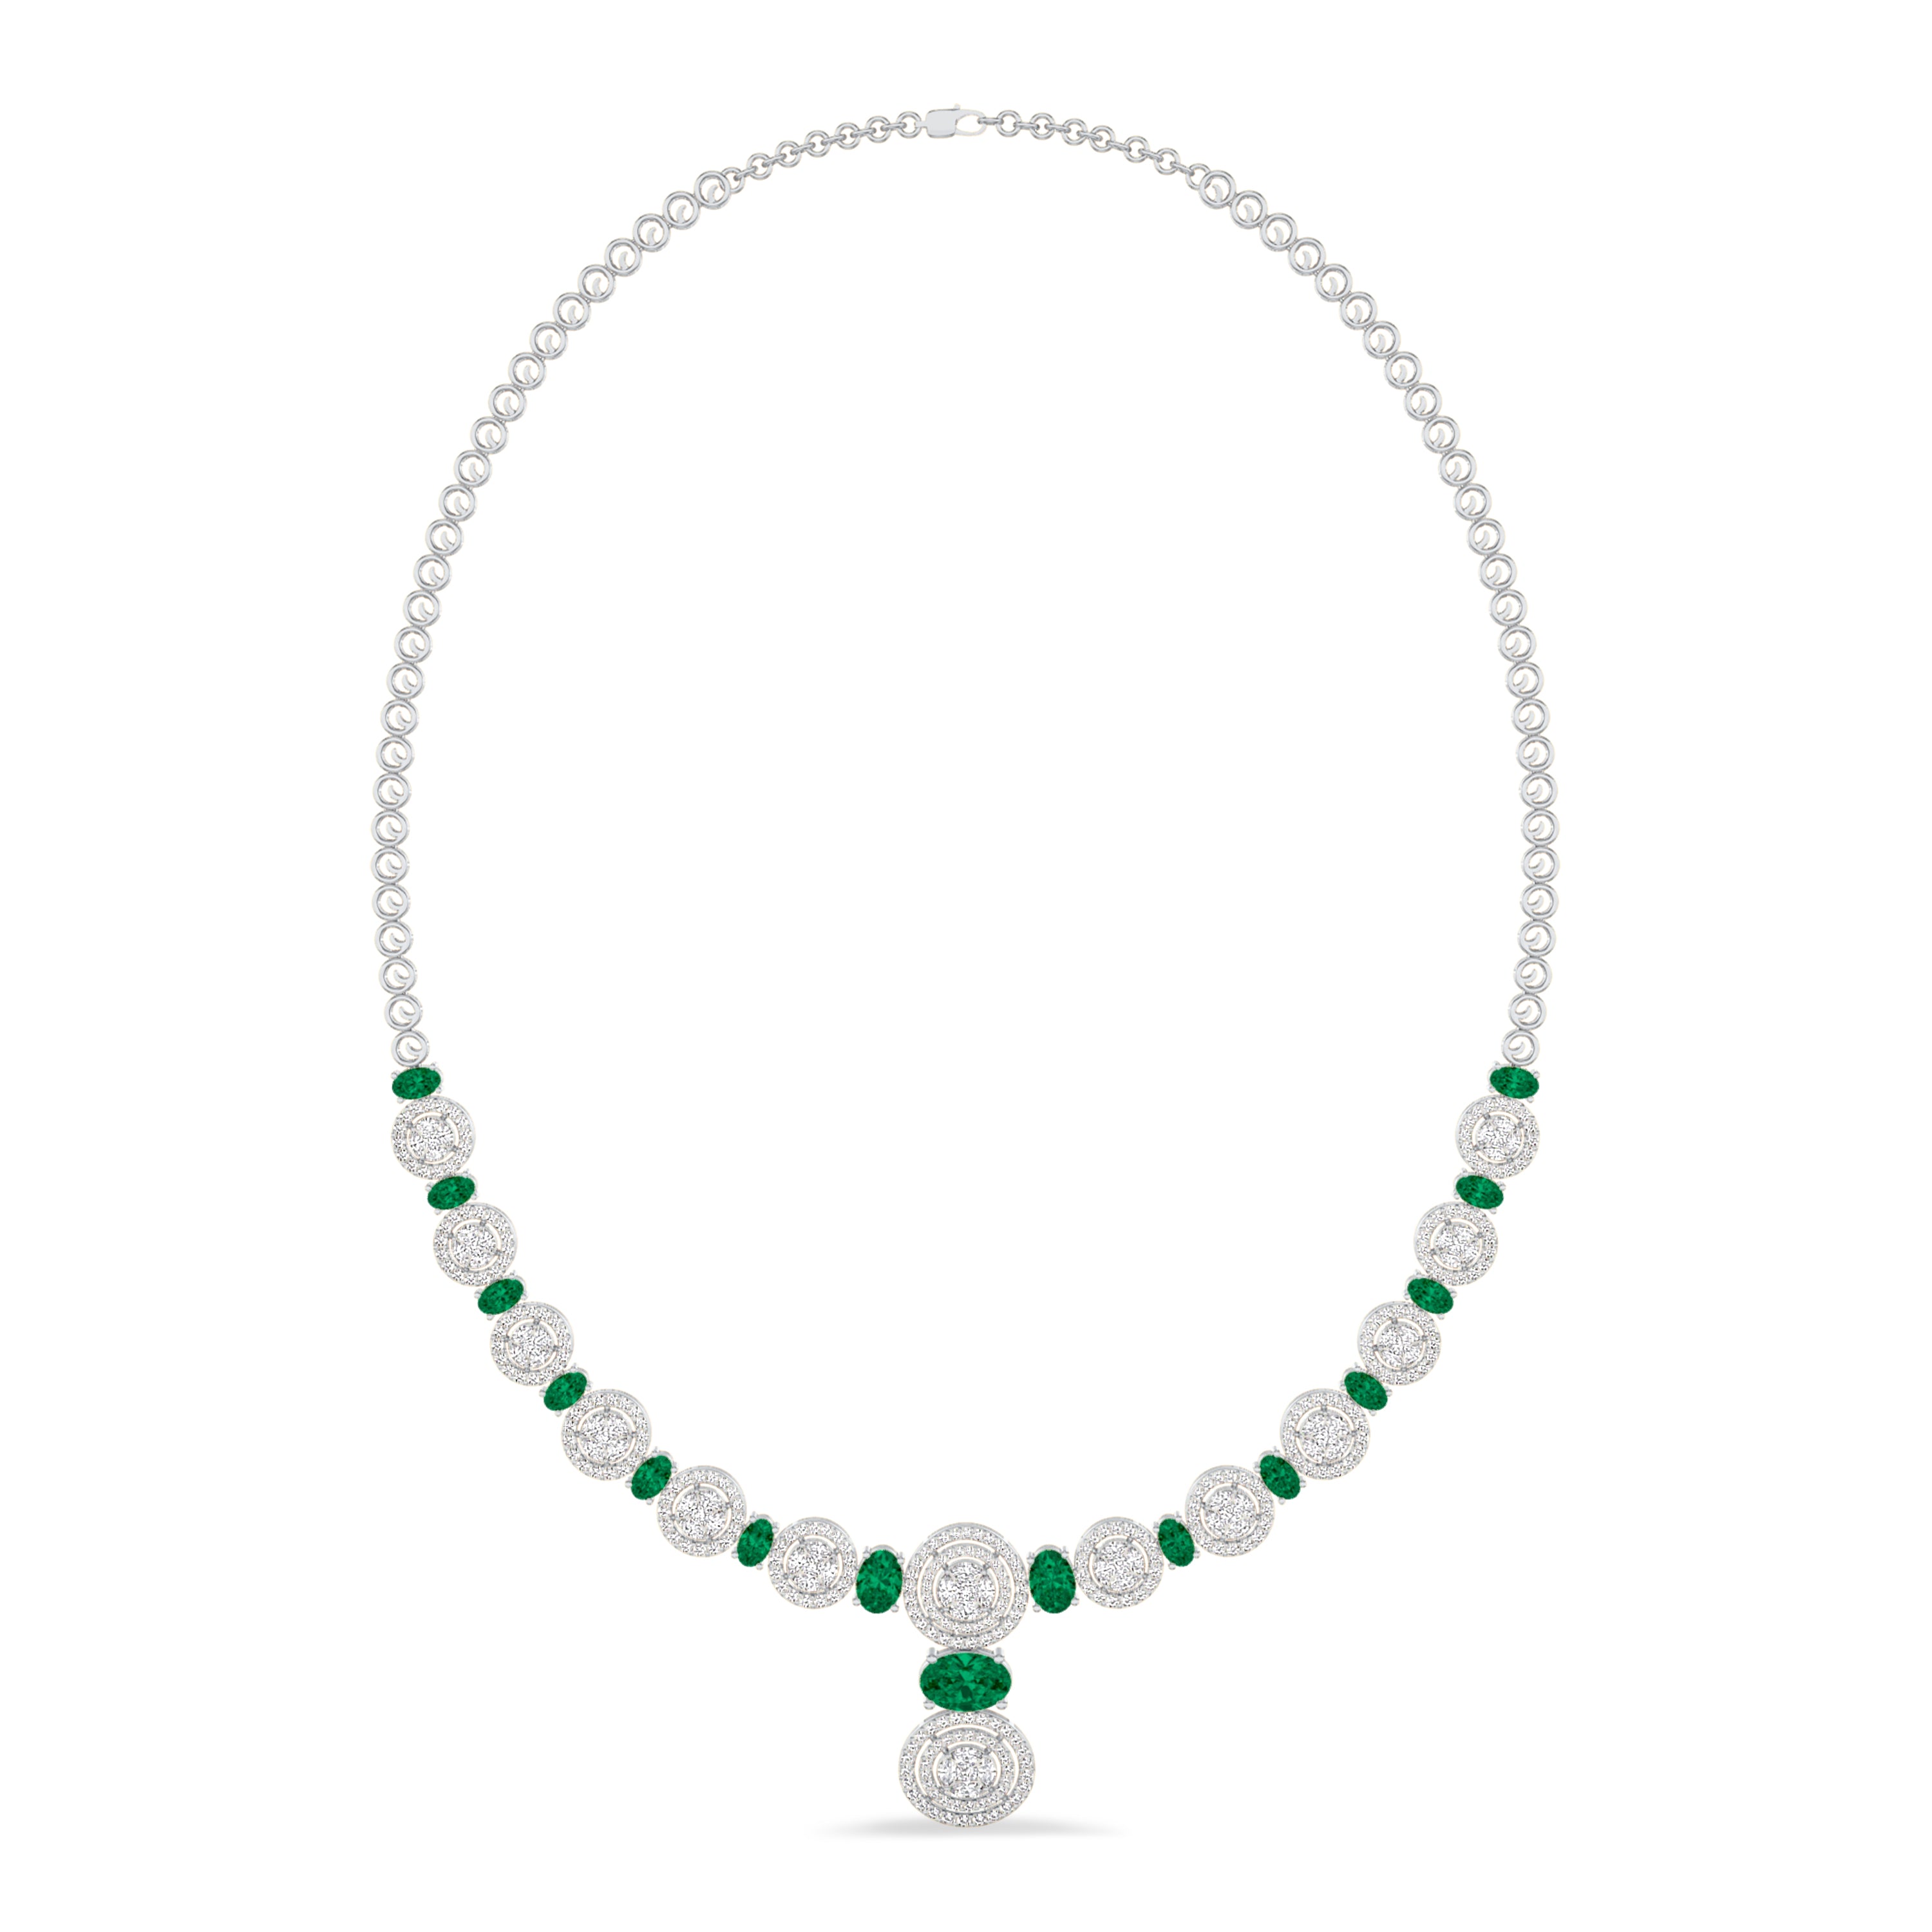 Diamond and emerald necklace in 4.71 carat diamonds, 5.09 carat emerald, F color, VS-SI clarity, 18k white gold #gold_white